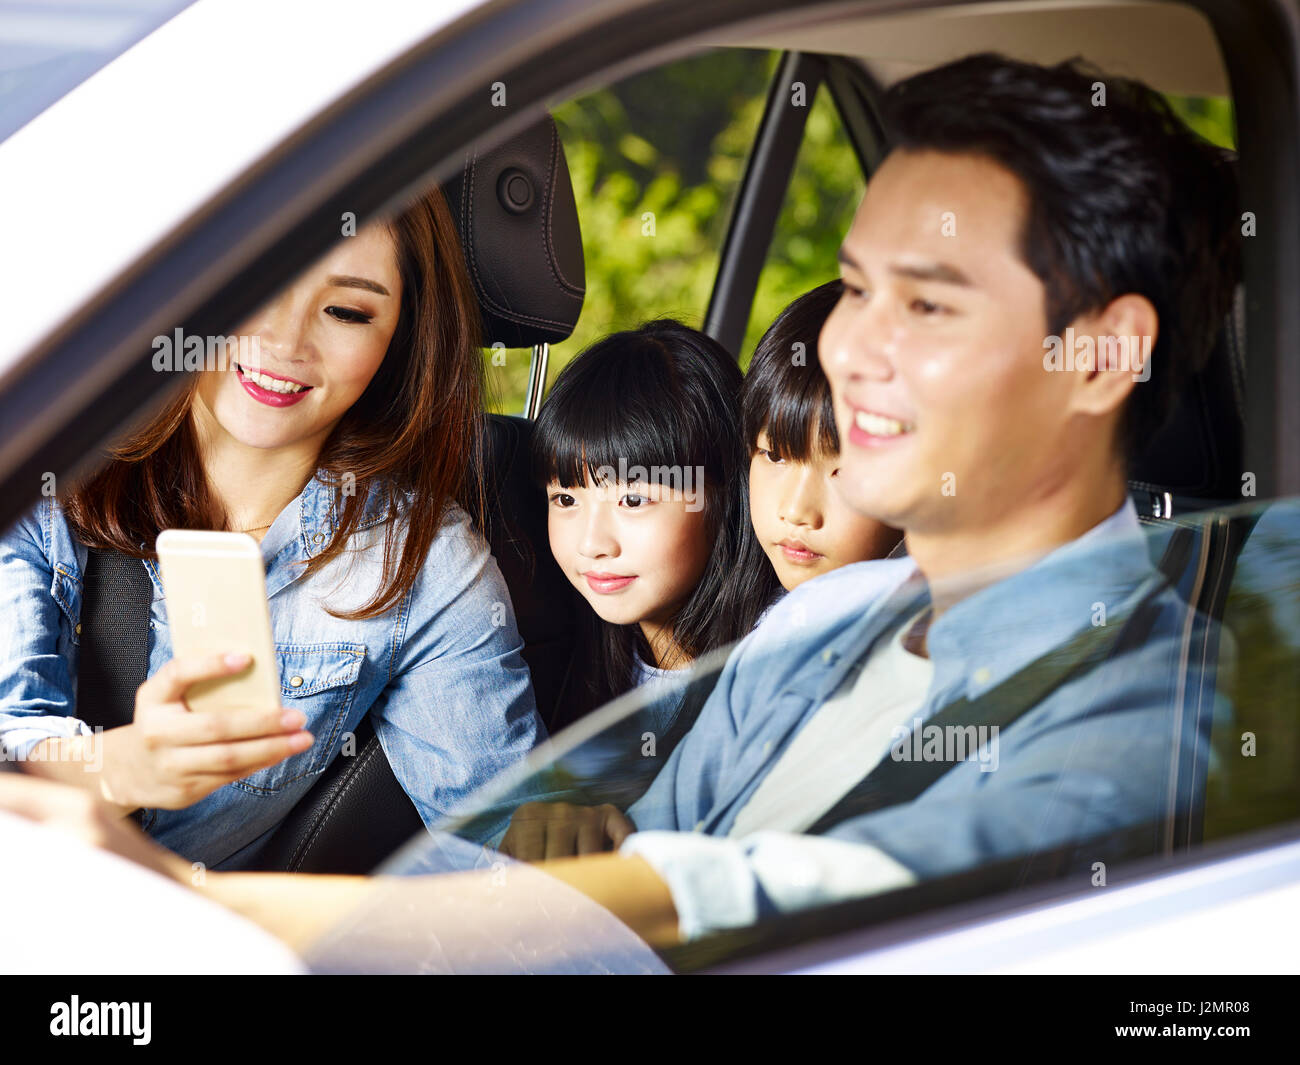 glückliche asiatischen Familie mit zwei Kindern reisen mit dem Auto, Mutter mit Handy während Vater fahren, Fokus auf das kleine Mädchen. Stockfoto